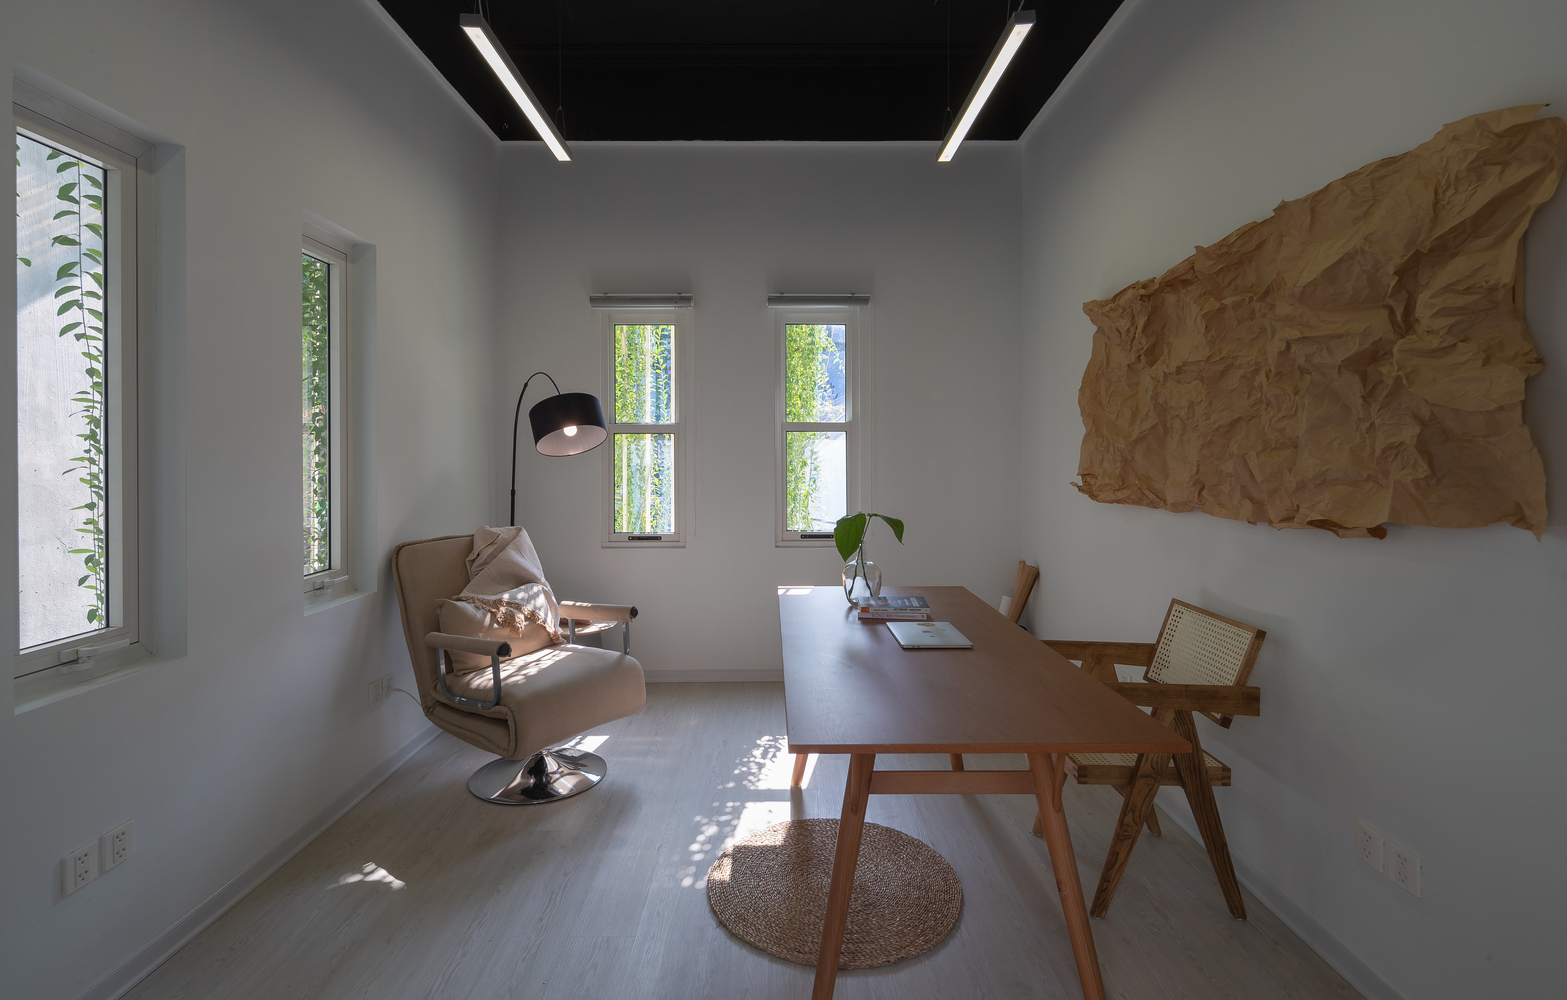 Phòng làm việc riêng biệt với nhiều cửa sổ kính trong suốt giúp tận dụng tối đa ánh sáng tự nhiên, đối lưu không khí hiệu quả.